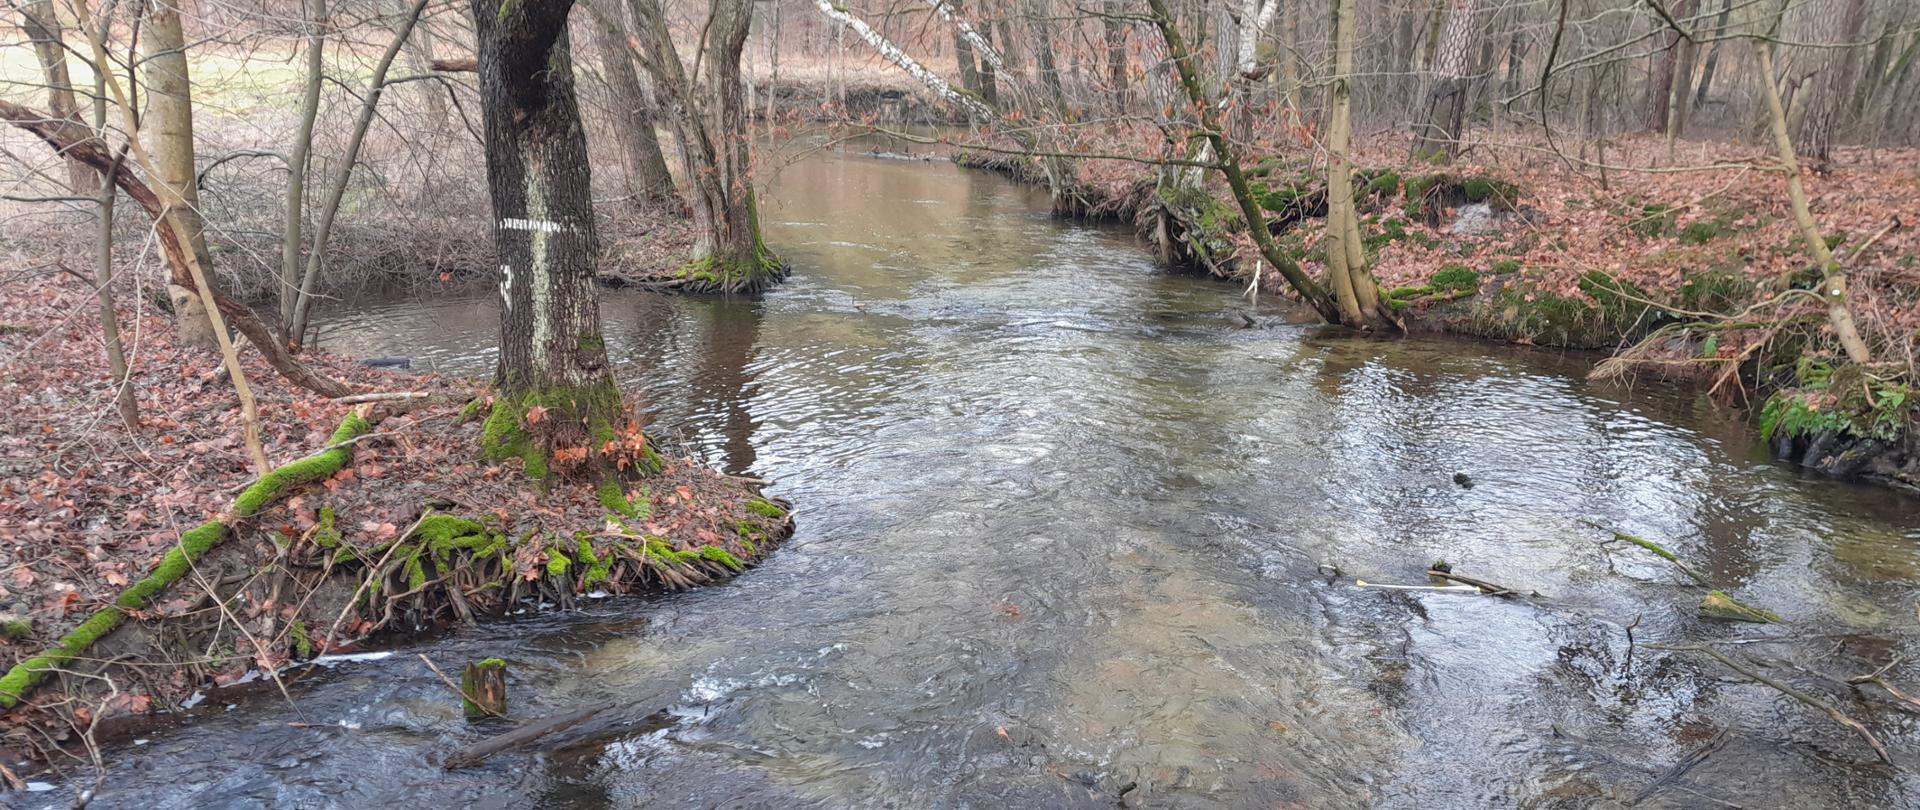 Przejrzysta woda w rzece w otoczeniu lasu.